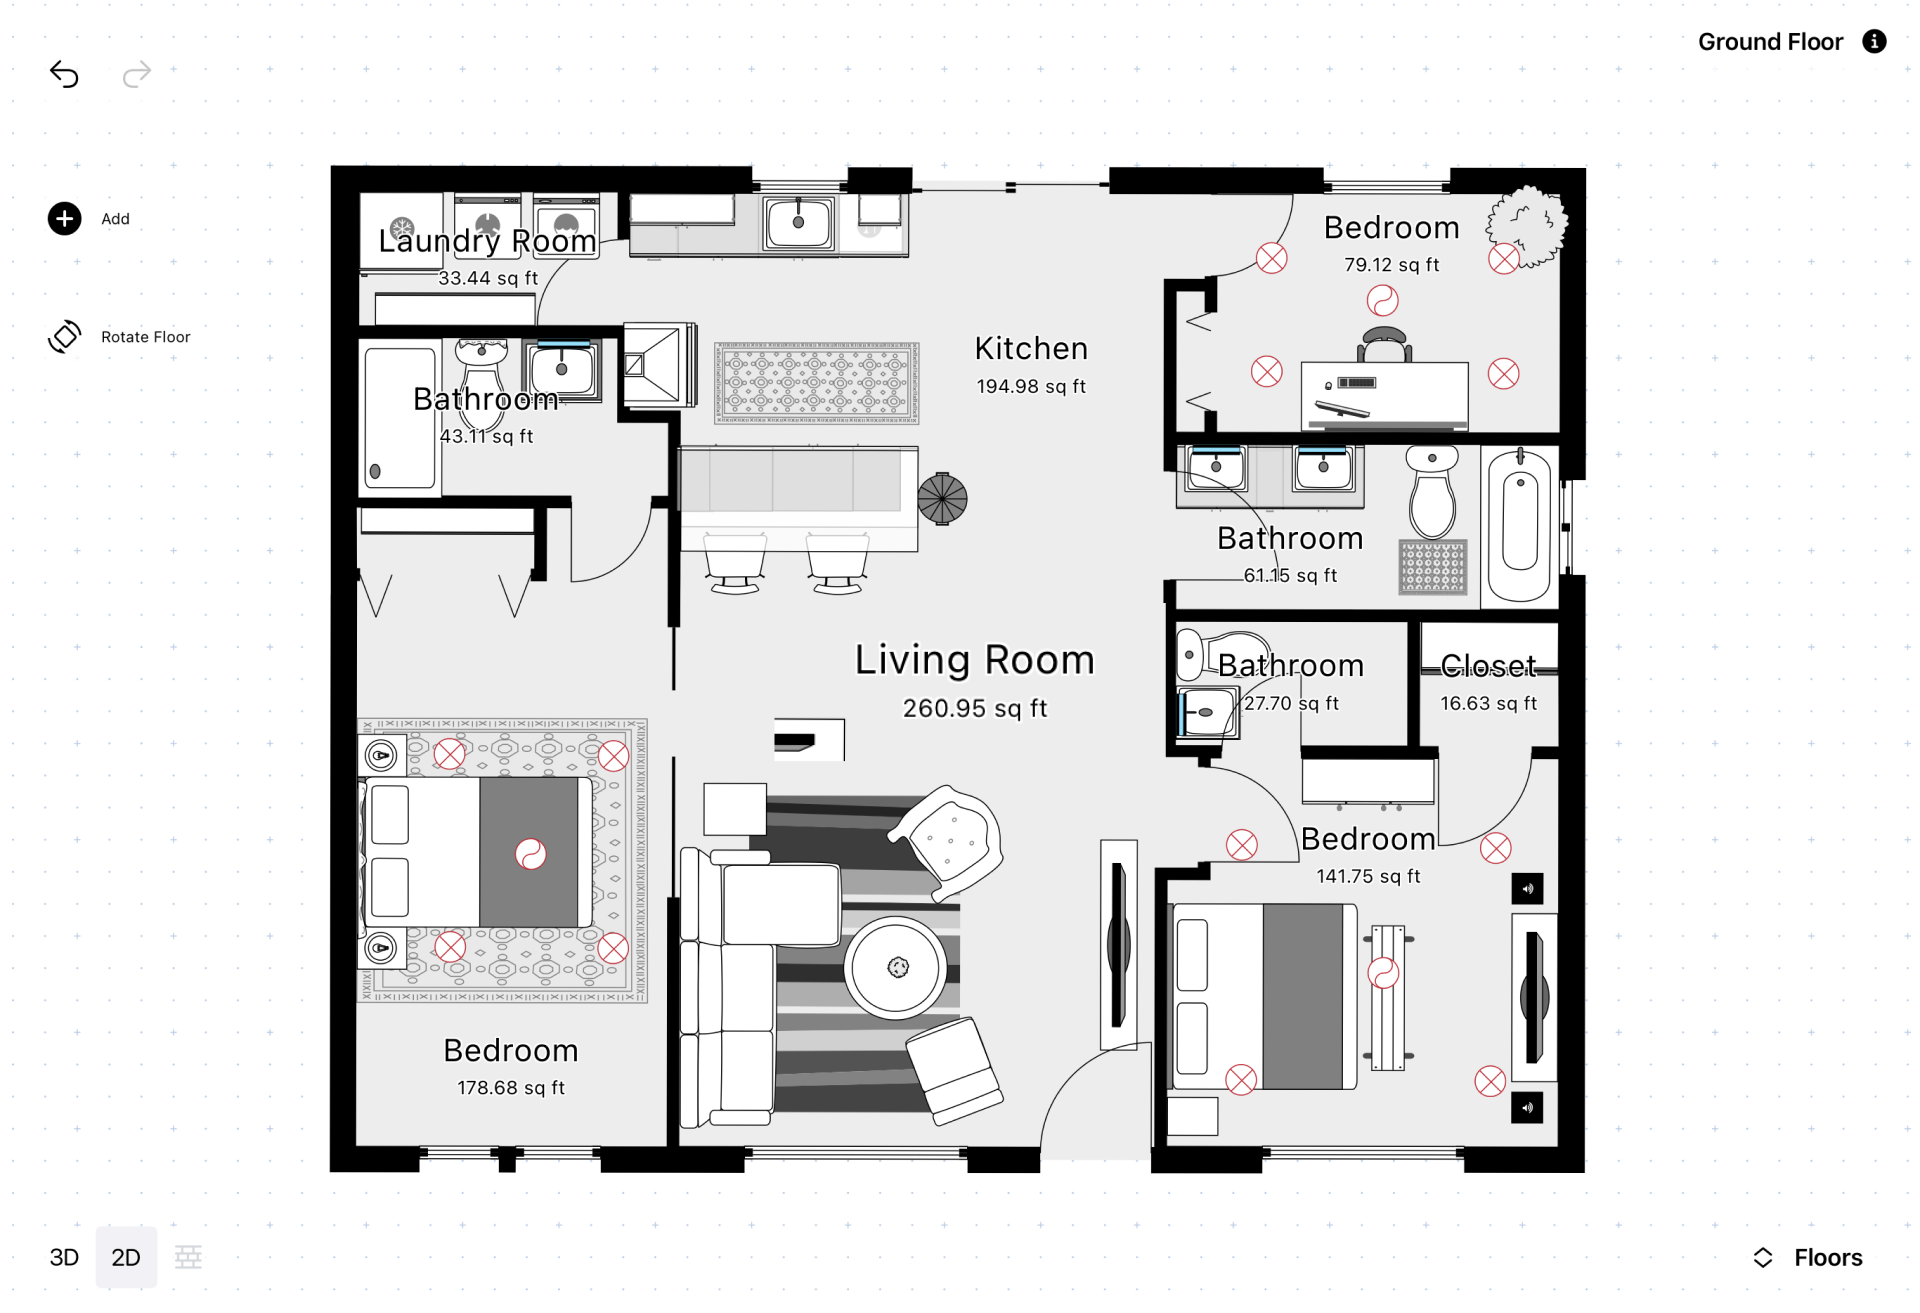 3D Floor Plans - RoomSketcher